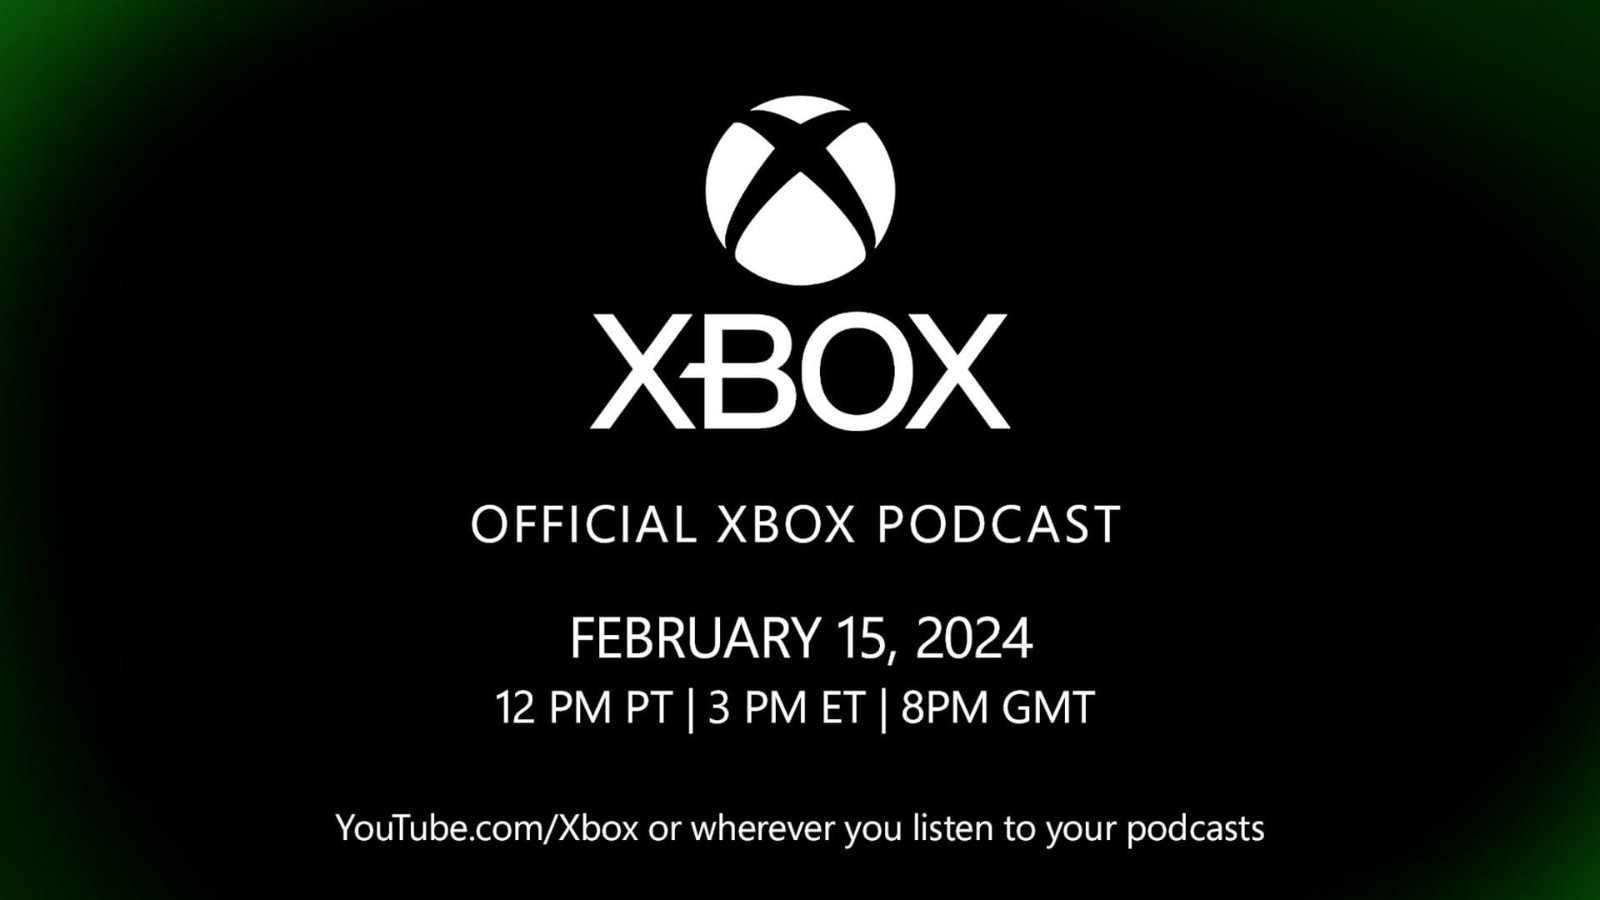 微软宣布“聚焦Xbox业务未来”节目上线日期